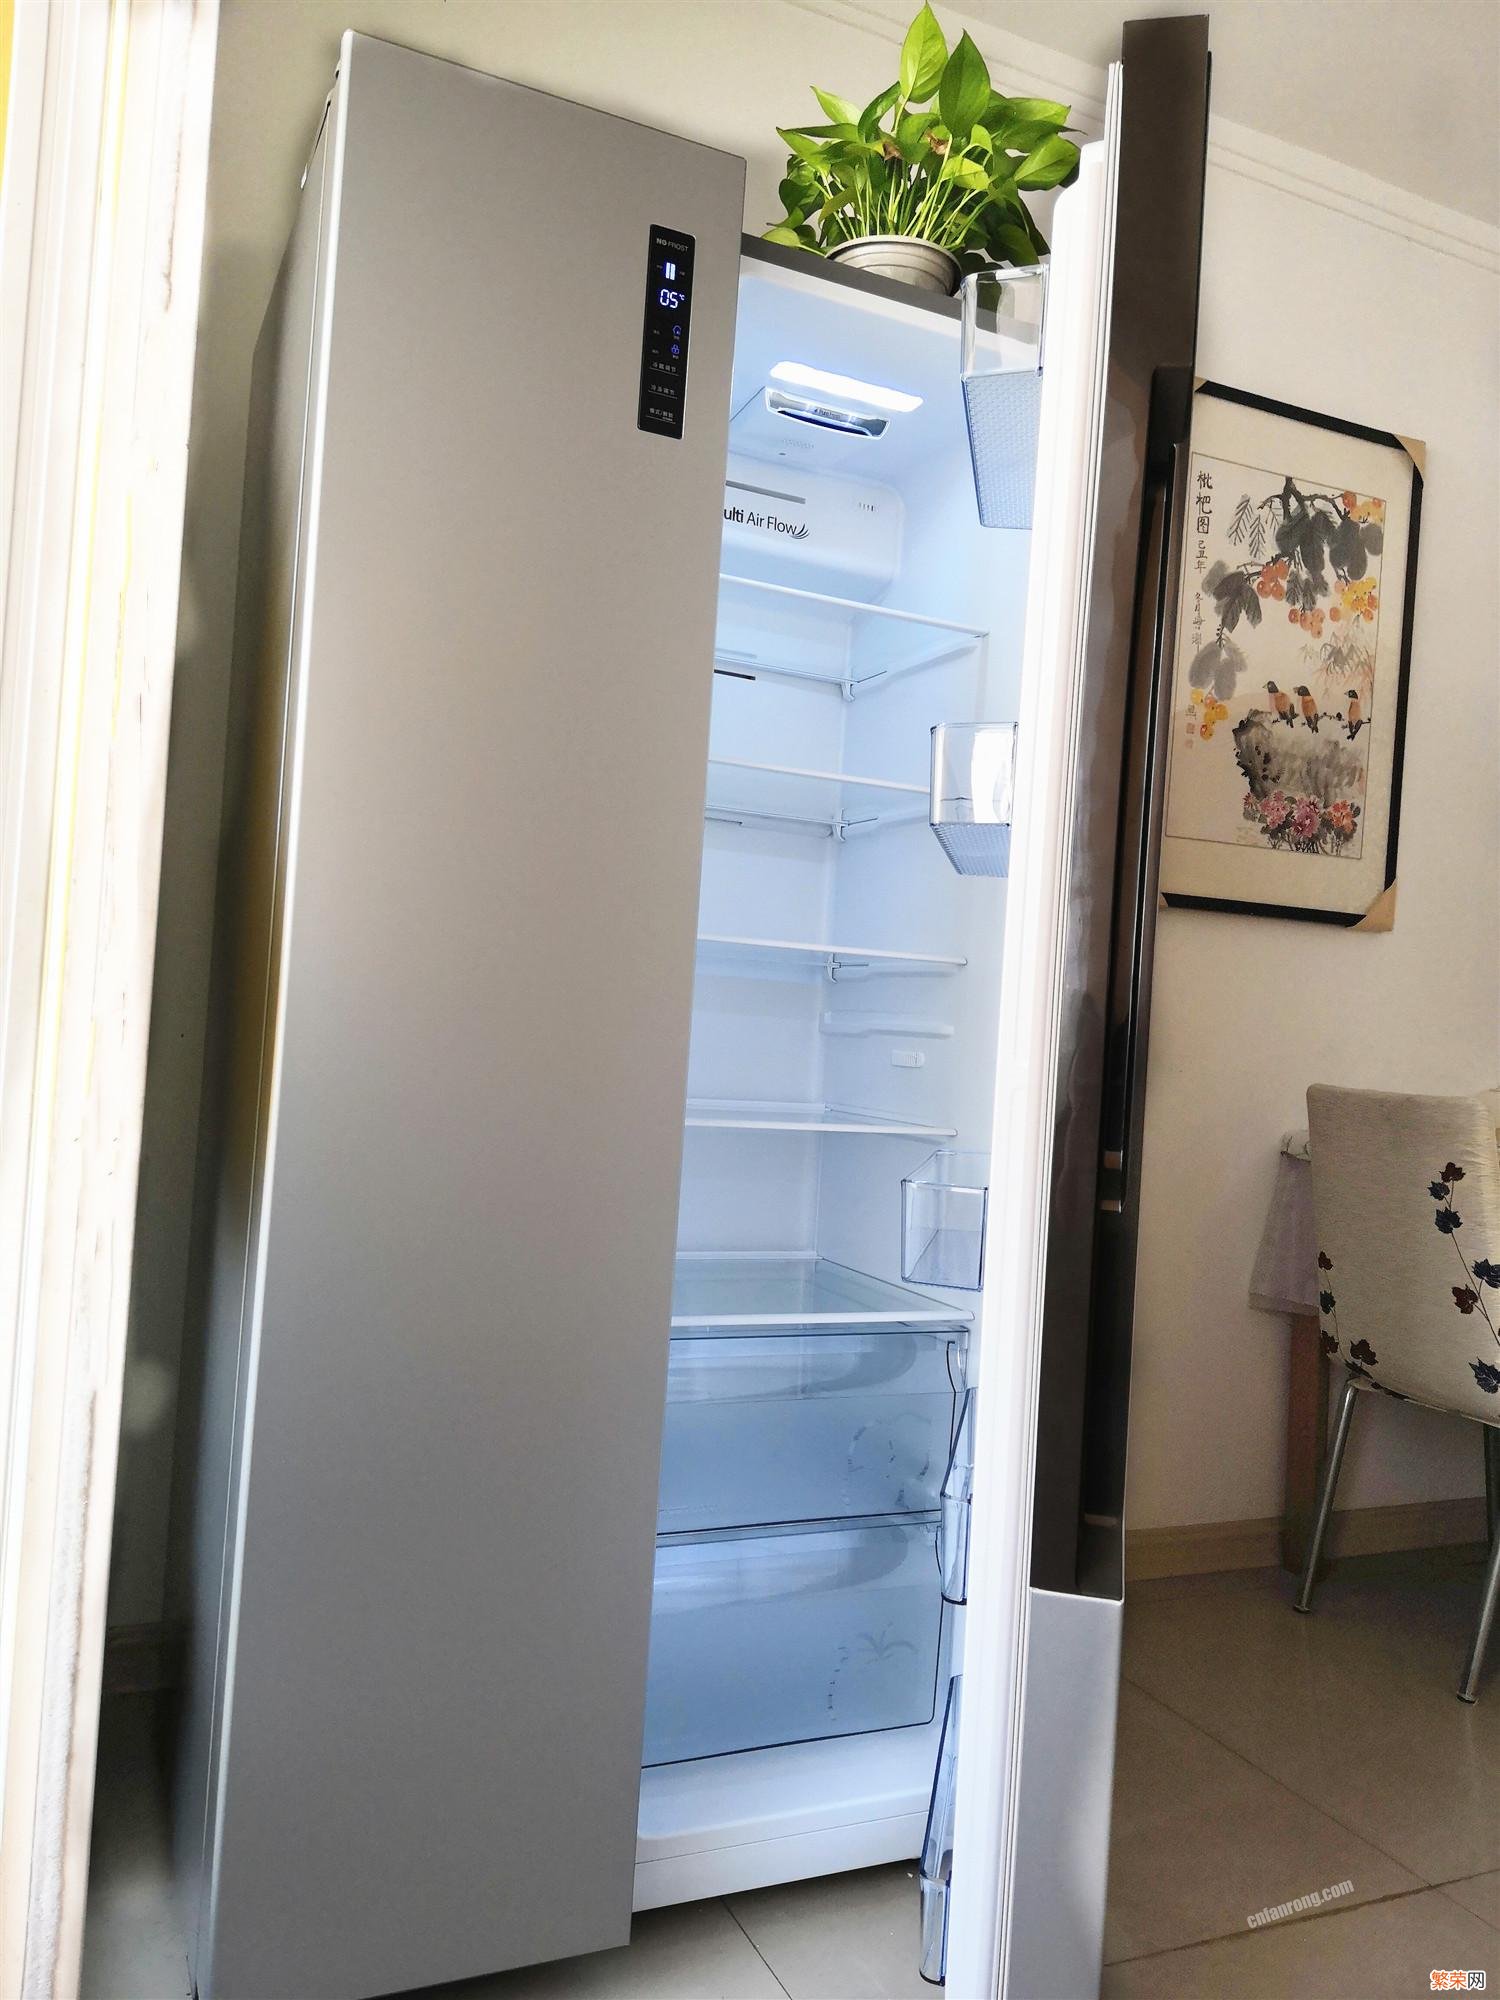 附：海信579L智能双变频冰箱使用介绍 海信冰箱使用说明书图解